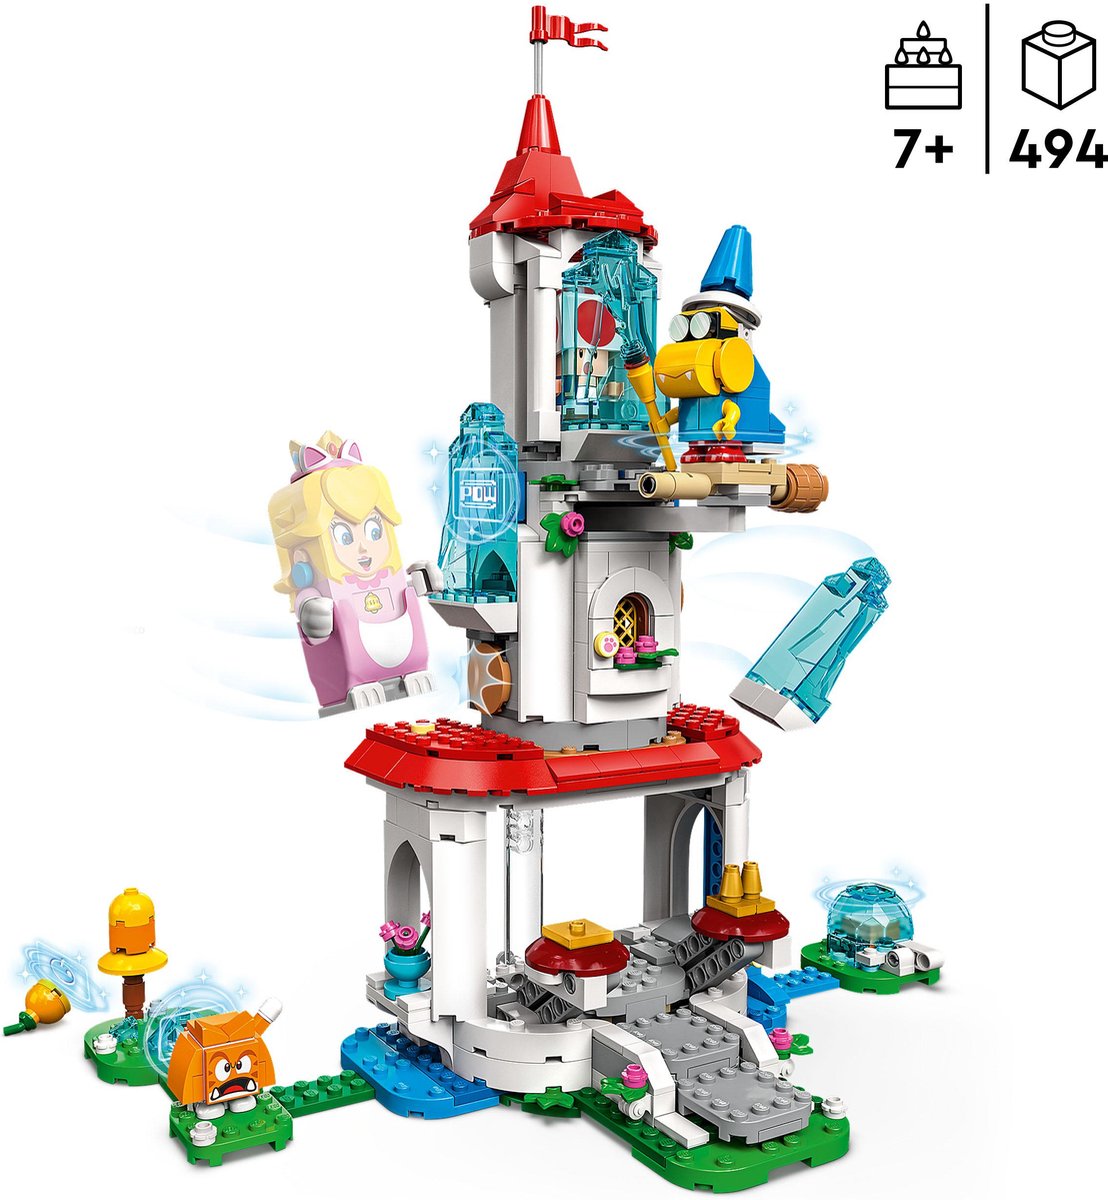 LEGO Super Mario, Ensemble d'extension Le costume de Peach chat et la tour  gelée, 71407, 7 ans et plus